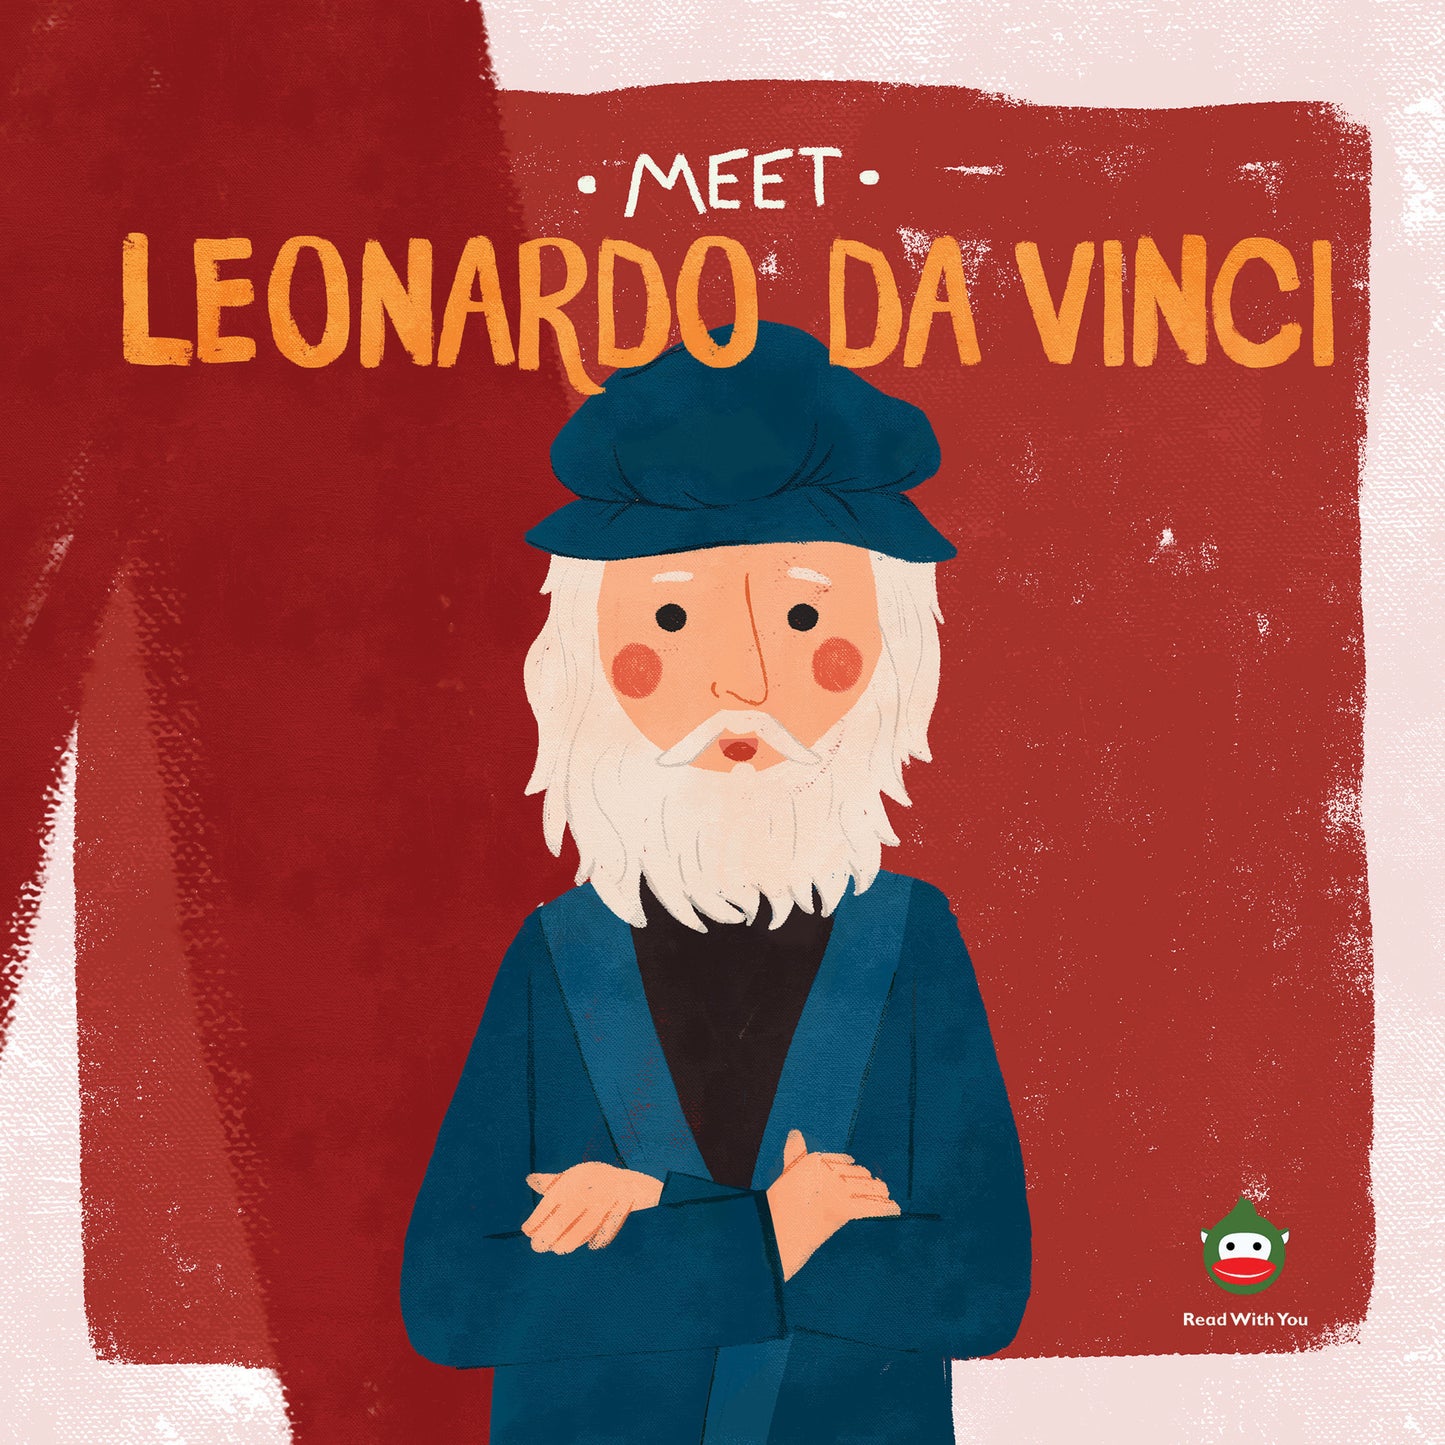 Meet Leonardo da Vinci